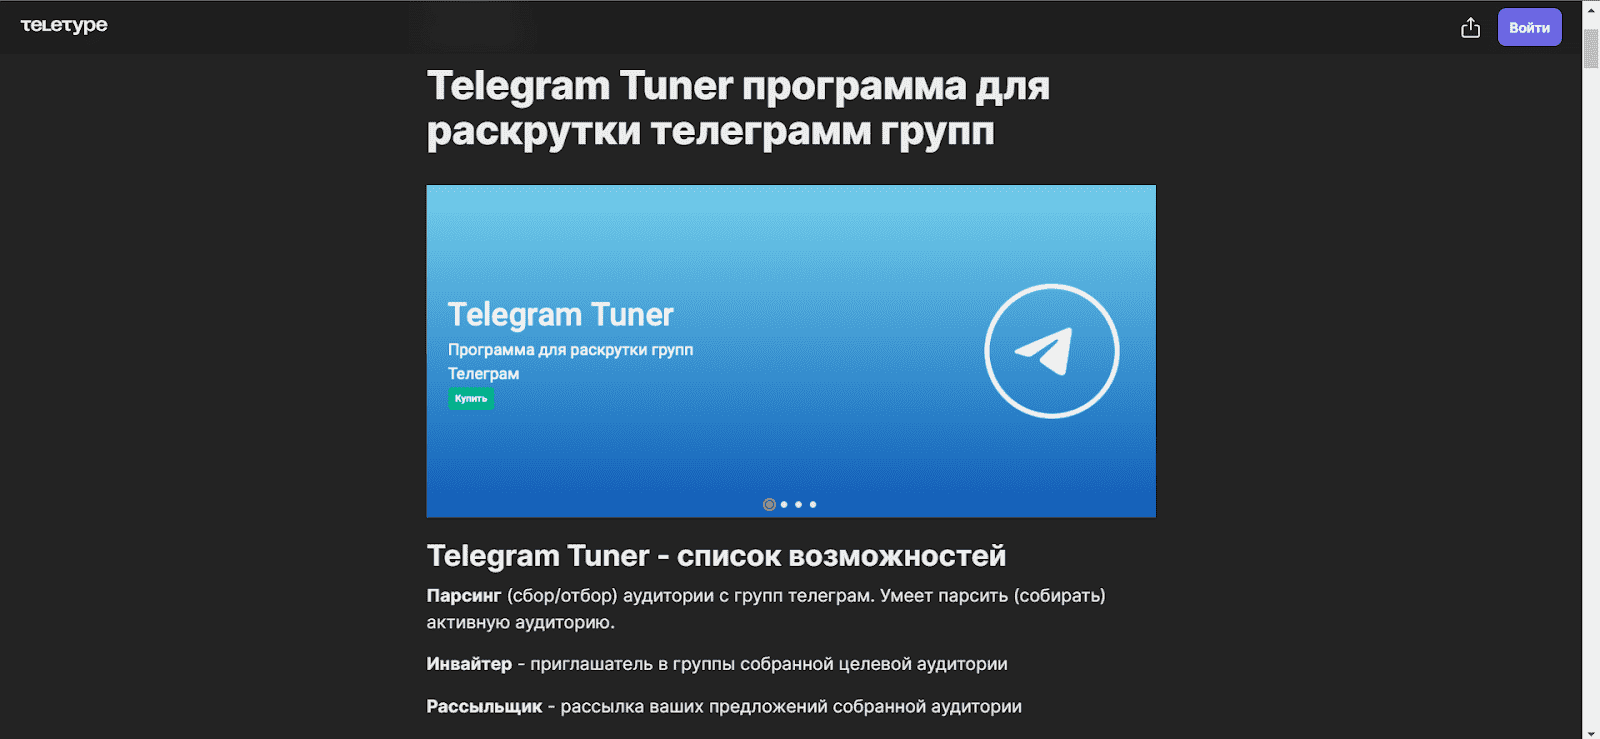 Страница Telegram Tuner - сервиса для инвайтинга в Телеграм